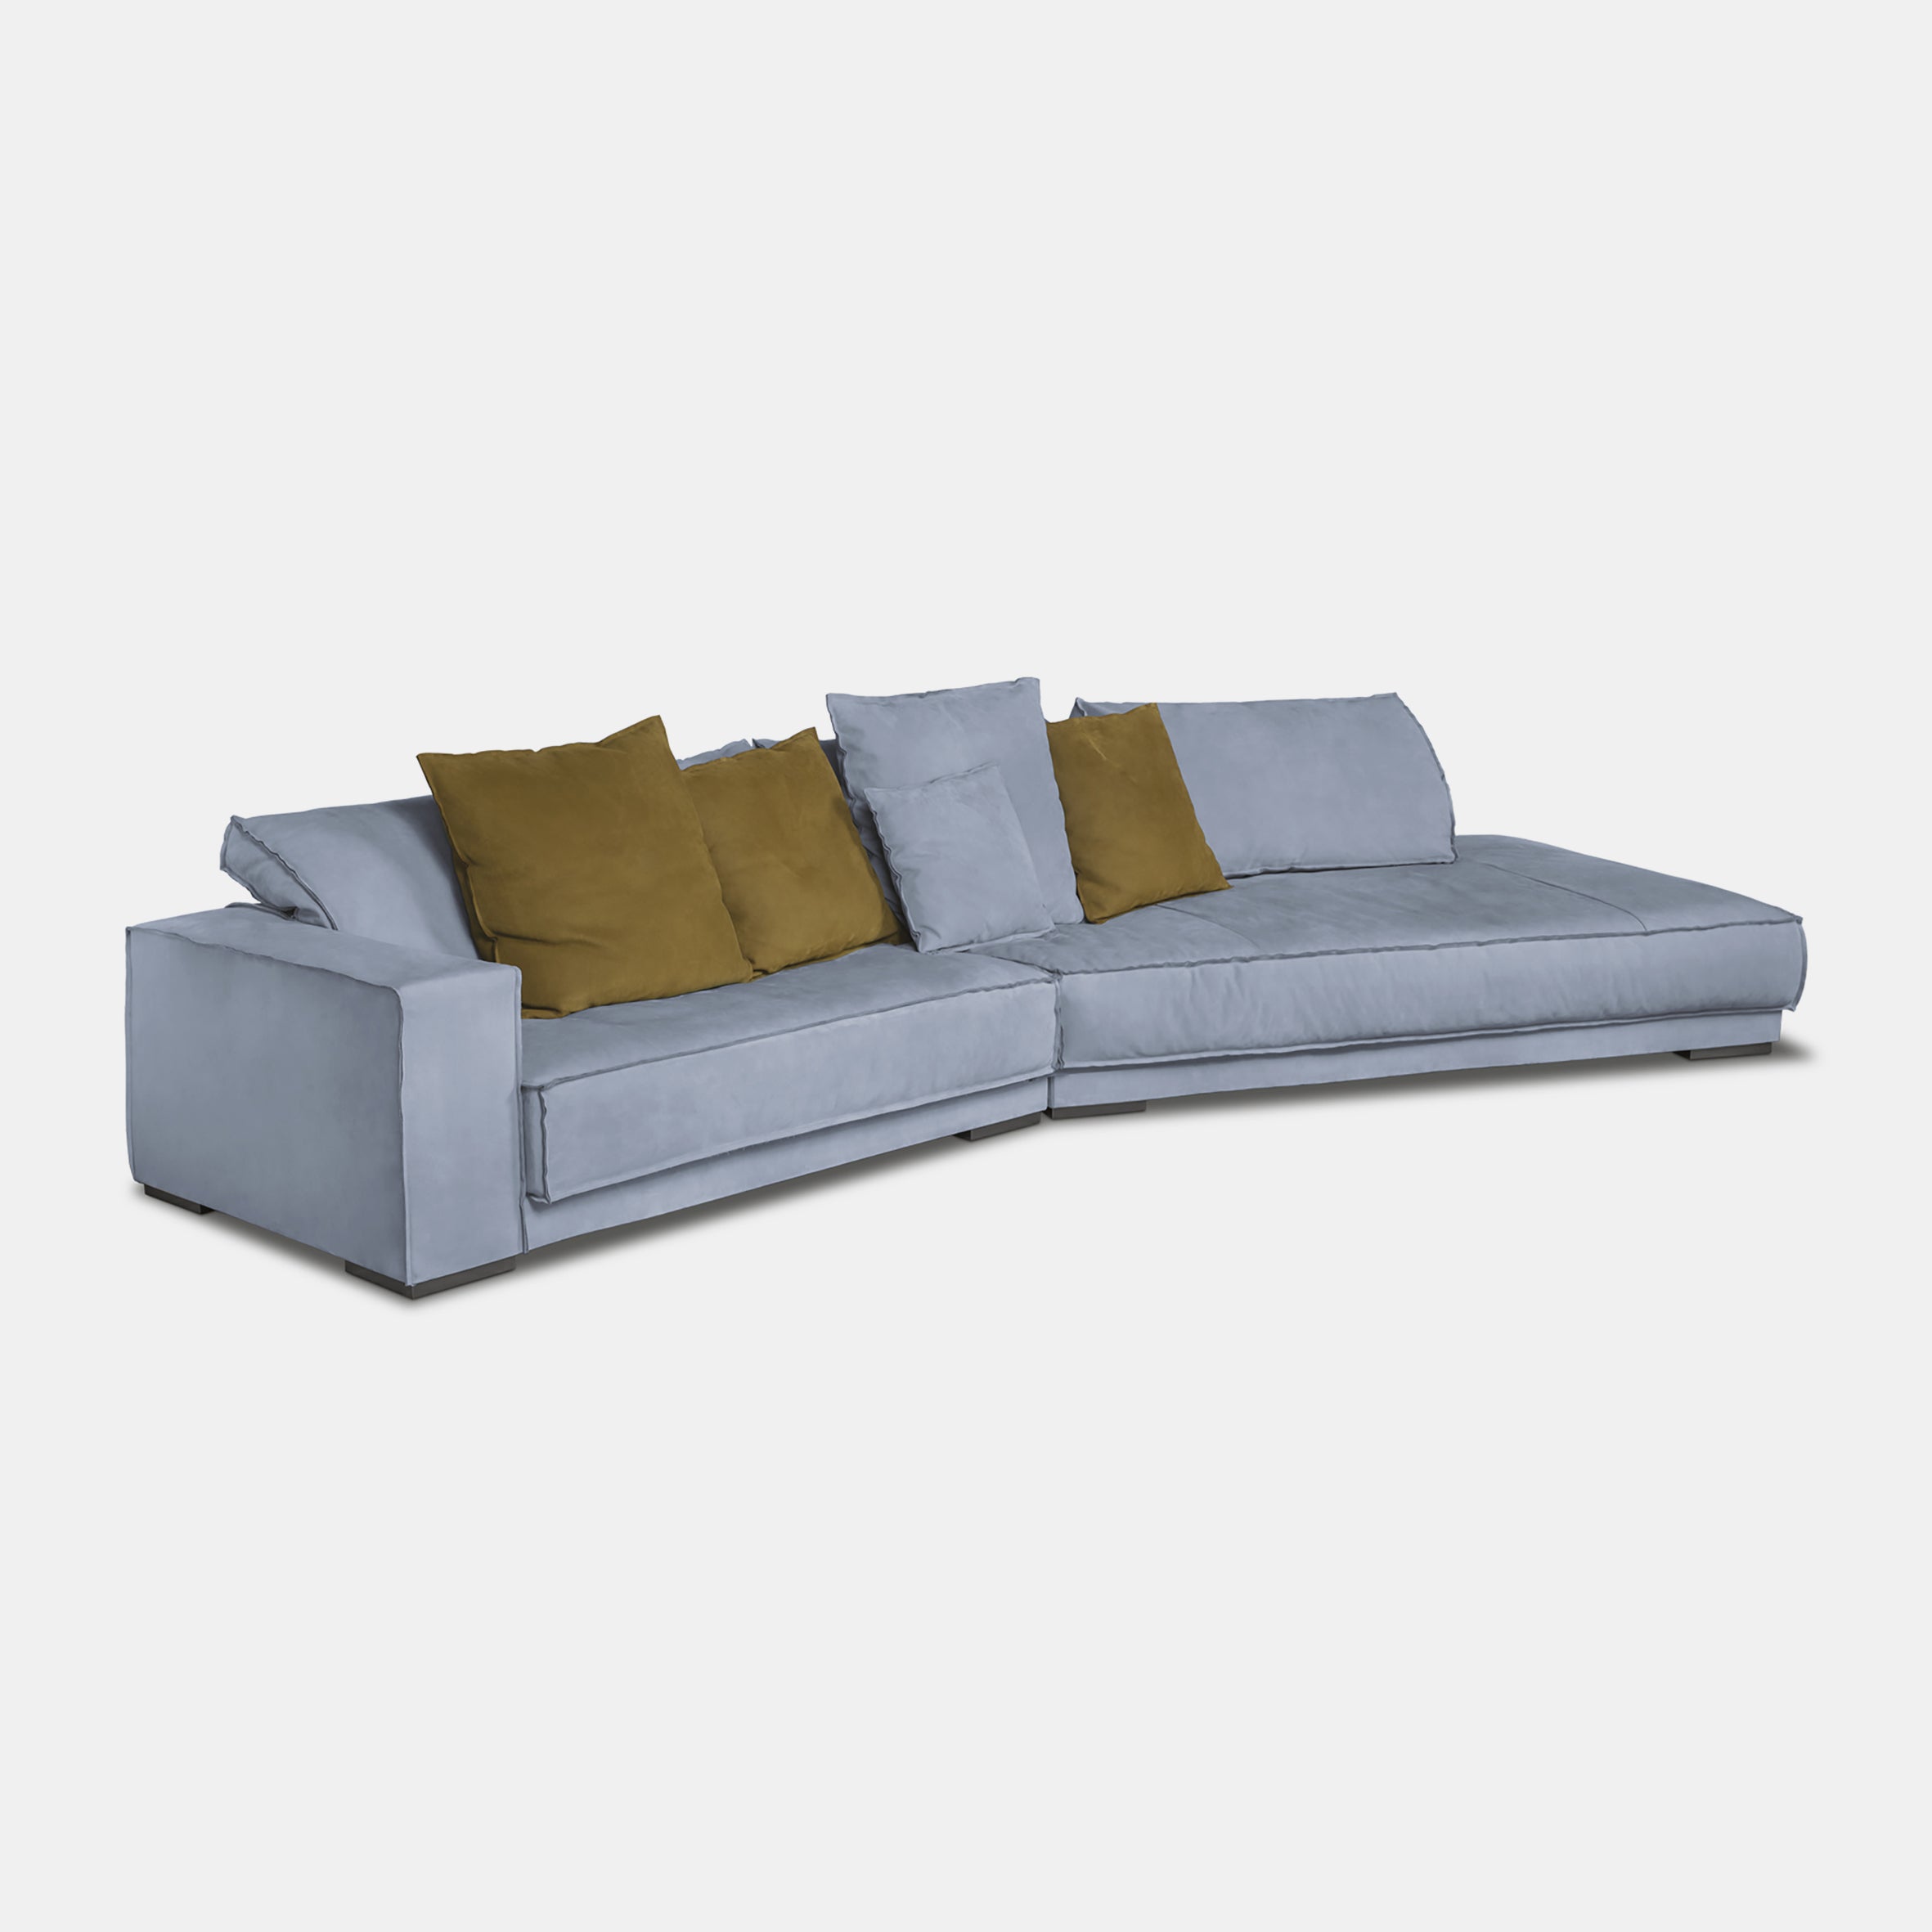 Budapest Soft Modular Sofa